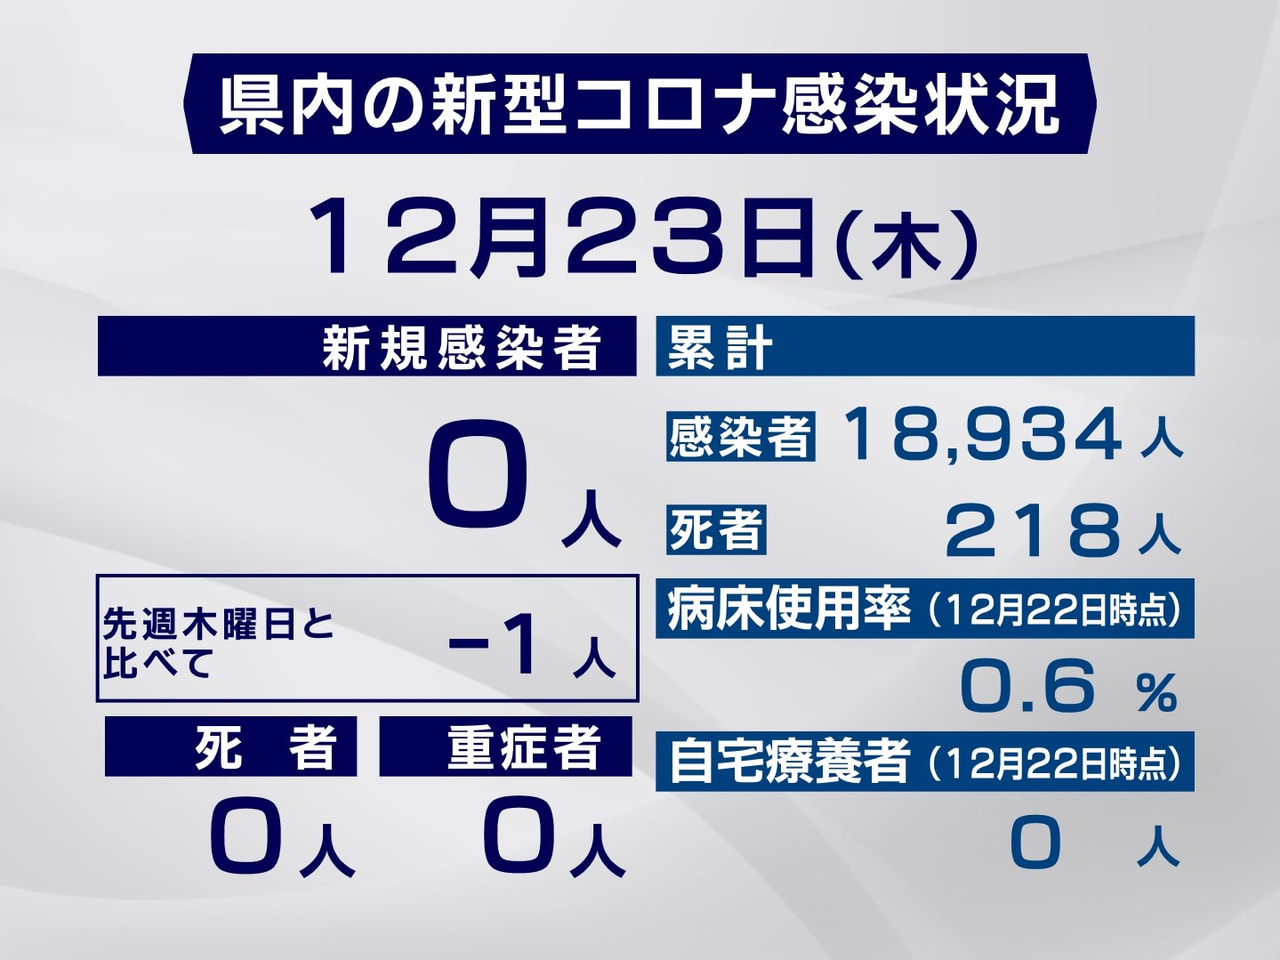 岐阜県は２３日、新型コロナウイルスの新たな感染者は確認されなかったと発表しました...